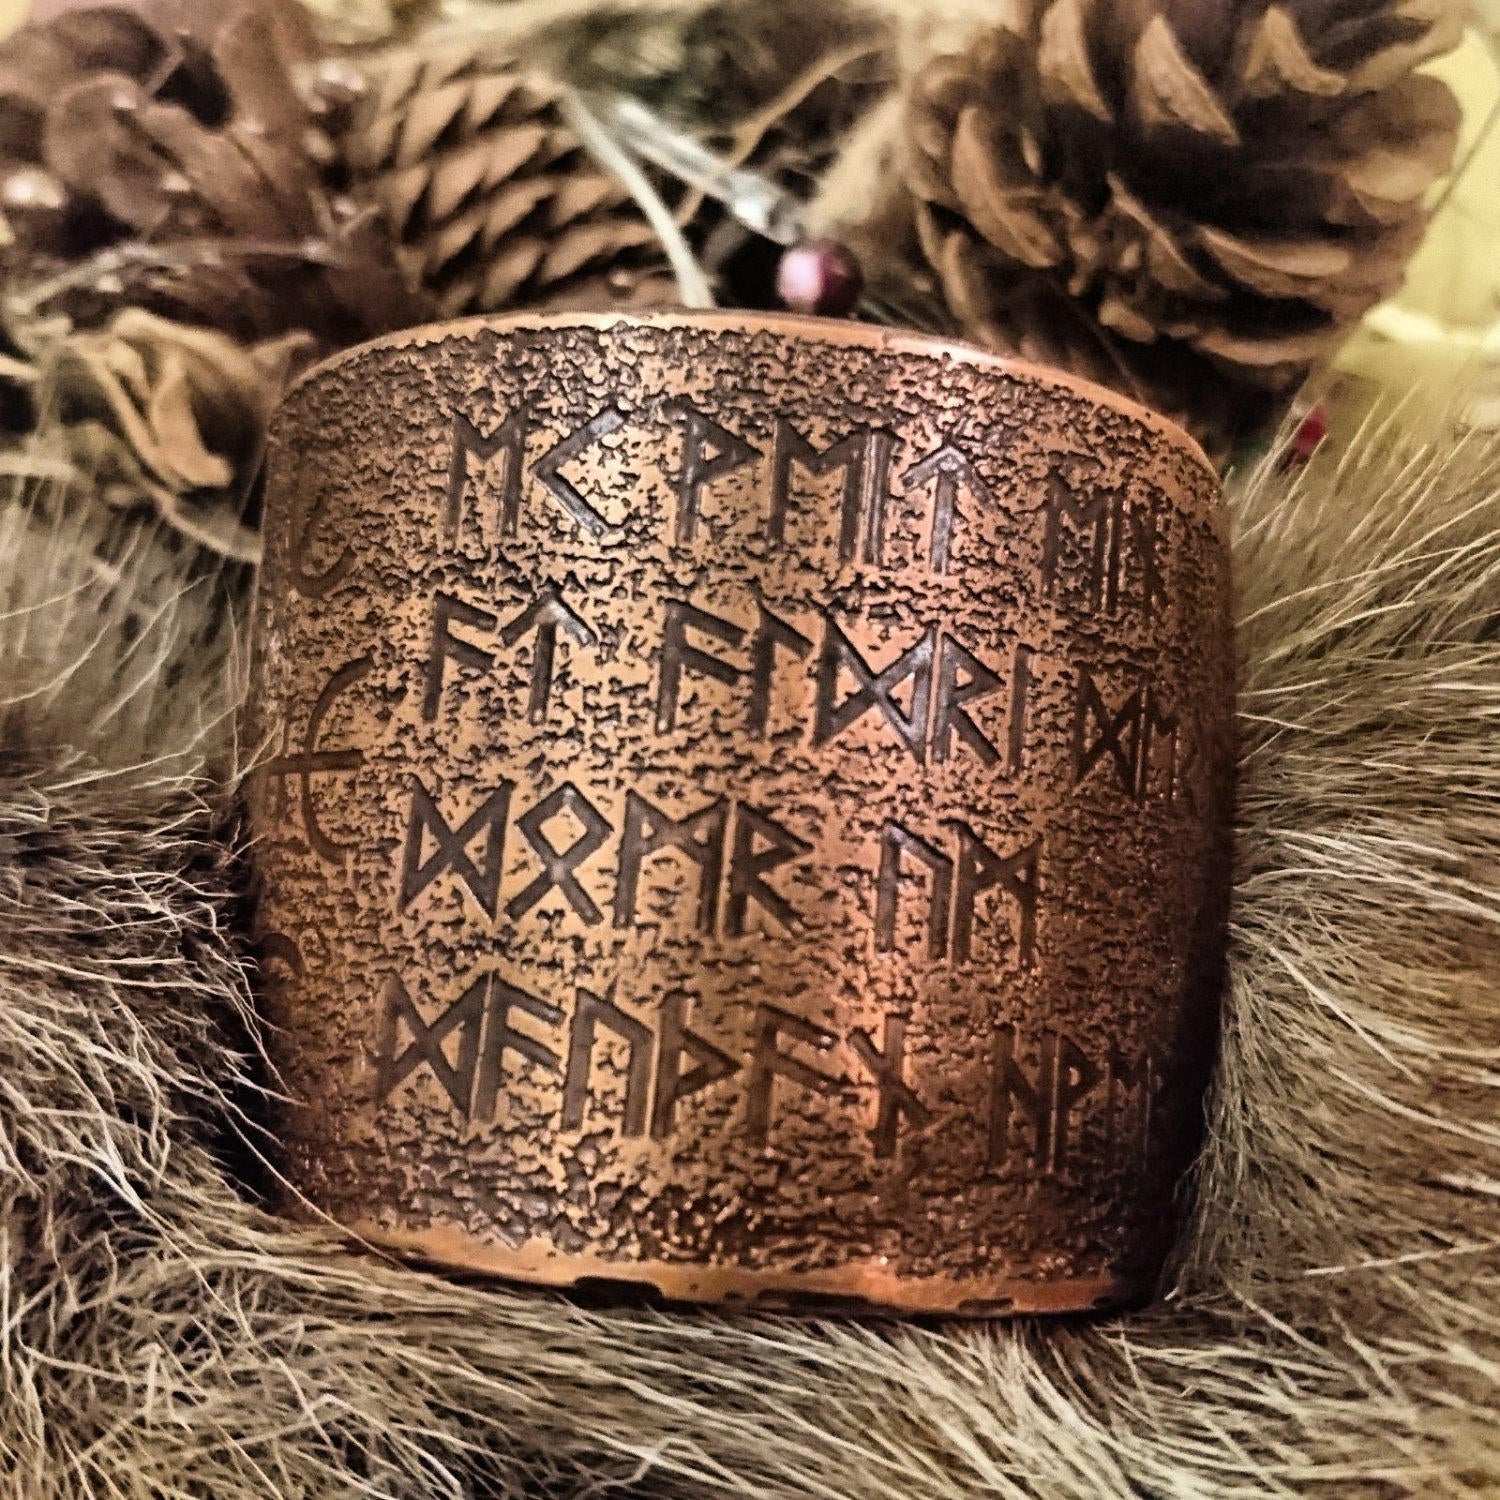 Havamal 77 Runes/Helm of Awe Cuff Bracelet Armband